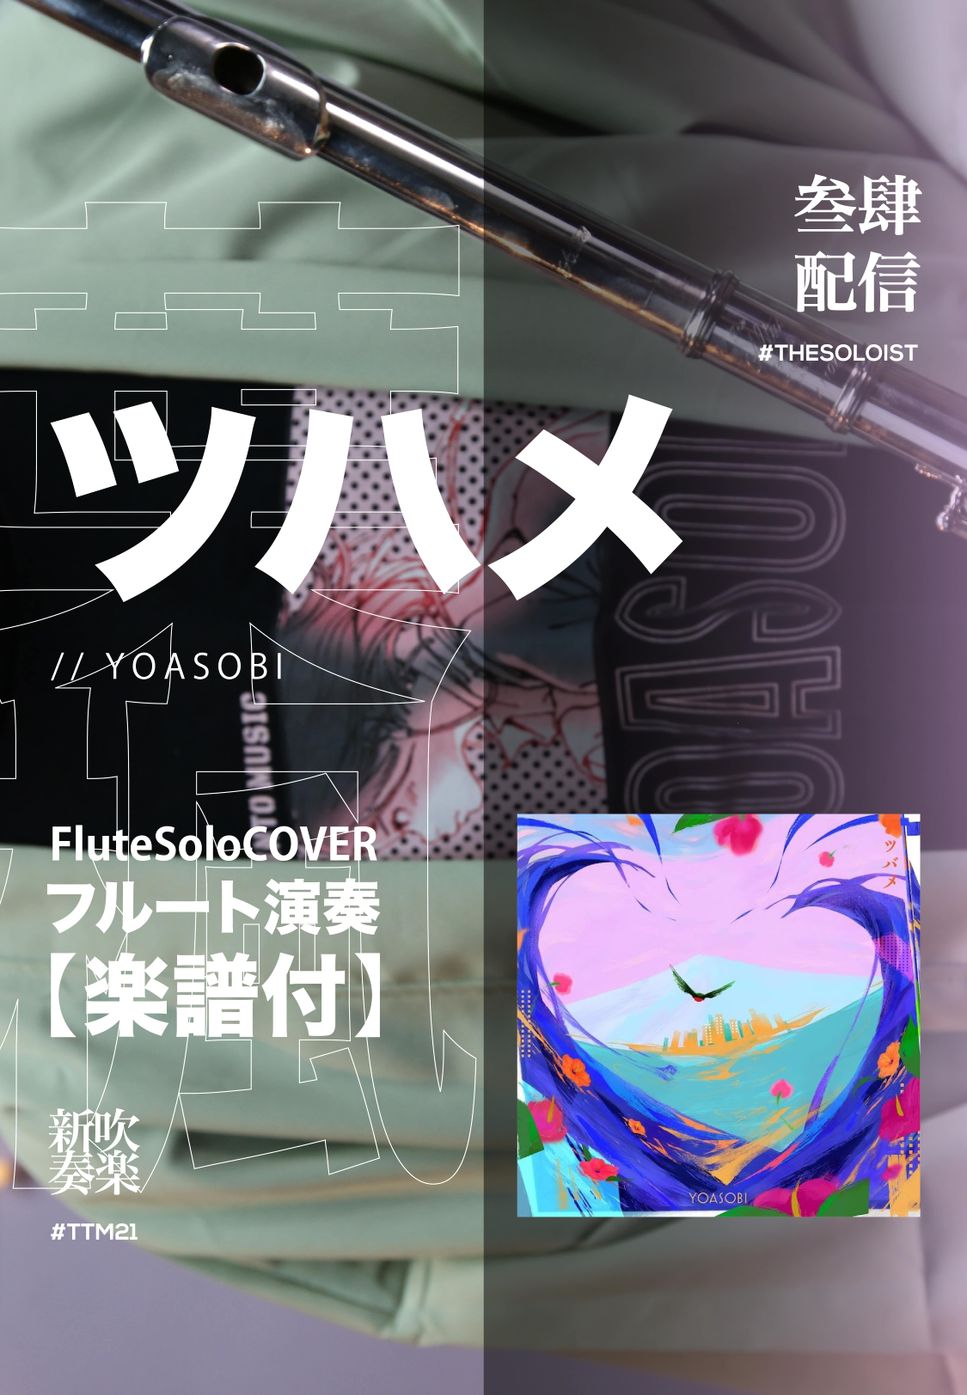 Ayase / Yoasobi - Tsubame / YOASOBI (FluteSolo) by funyip